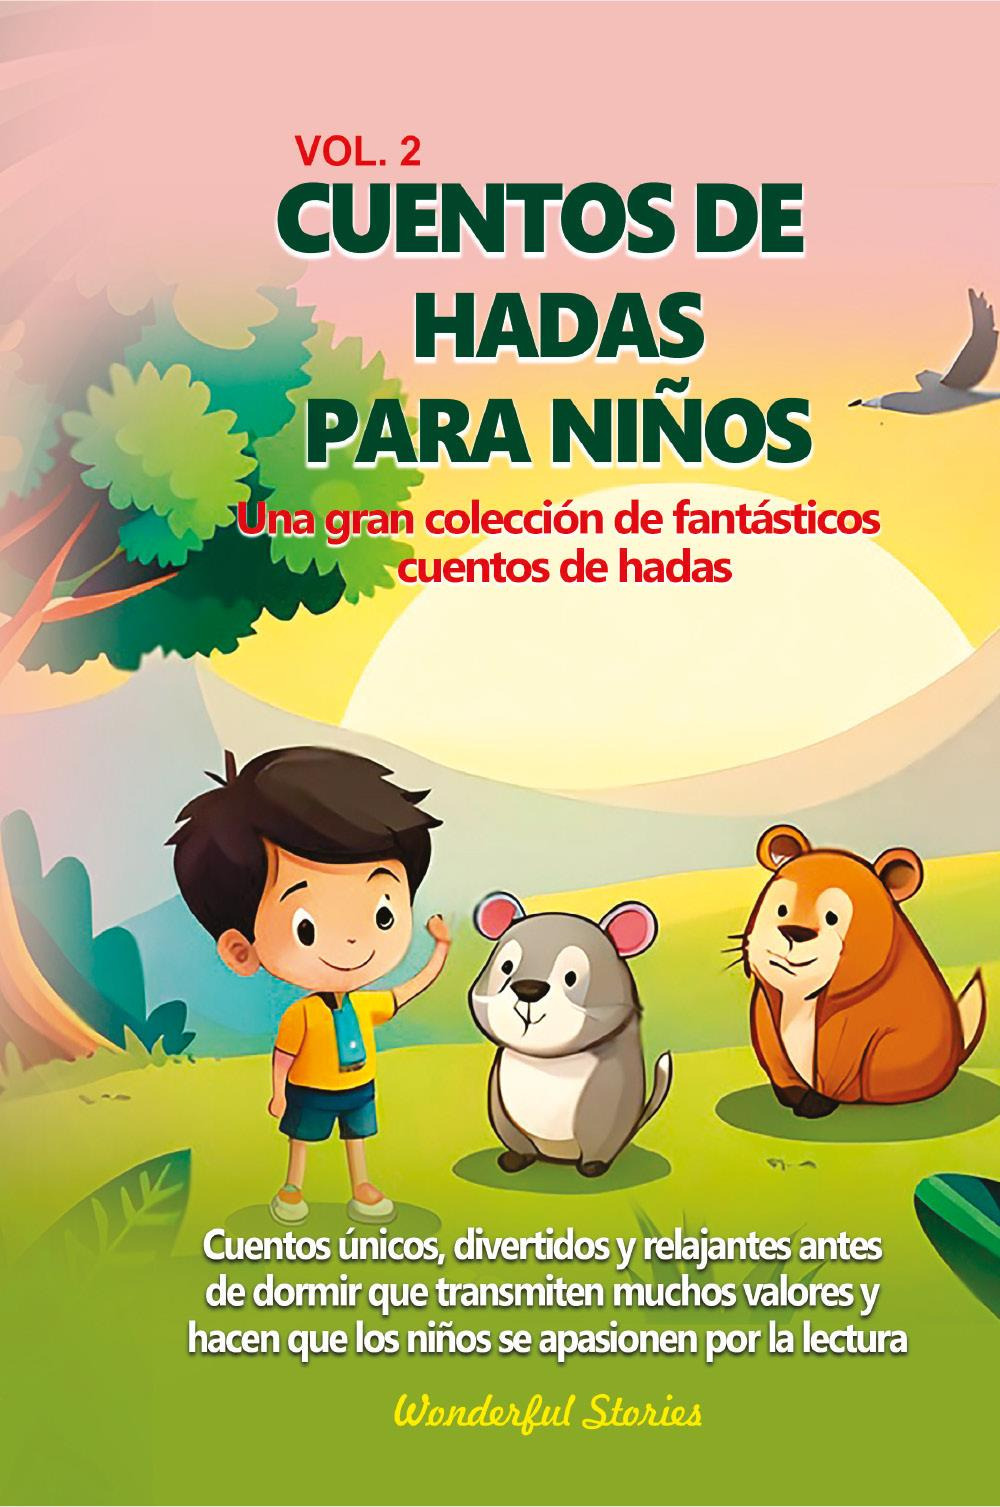 Cuentos de hadas para niños Una gran colección de fantásticos cuentos de hadas. Vol. 2